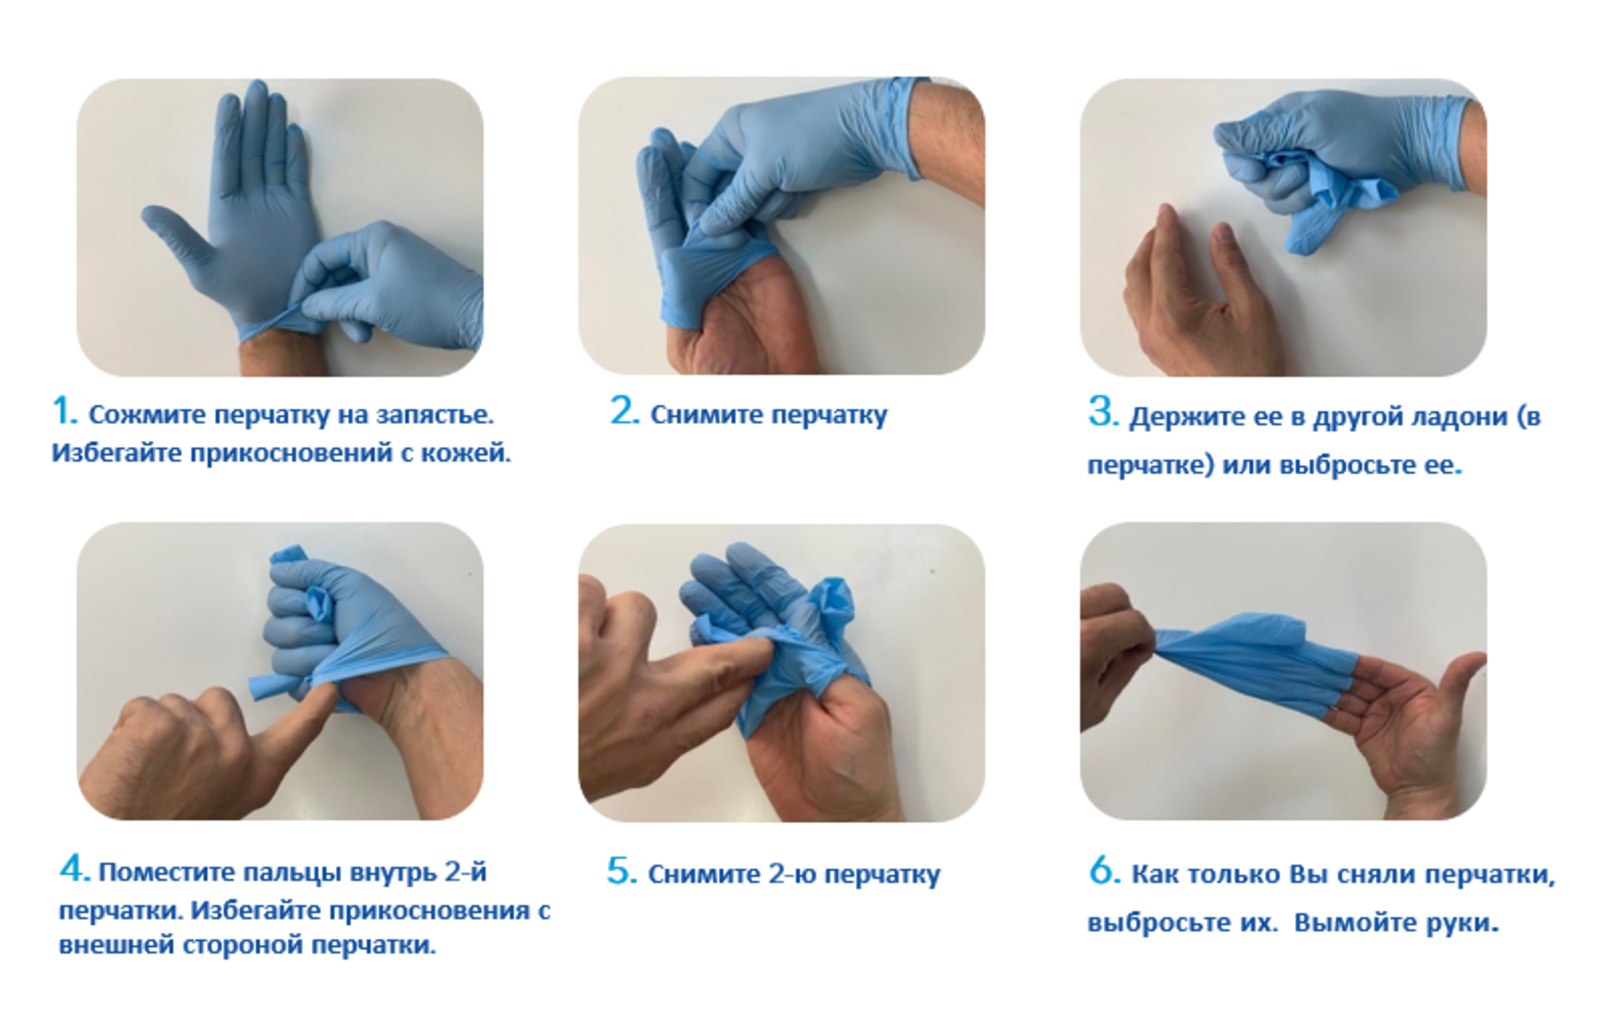 Стерильные перчатки алгоритм. Техника надевания стерильных перчаток. Алгоритм одевания и снятия перчаток медицинских. Алгоритм снимания стерильных перчаток. Правила одевания стерильных перчаток.